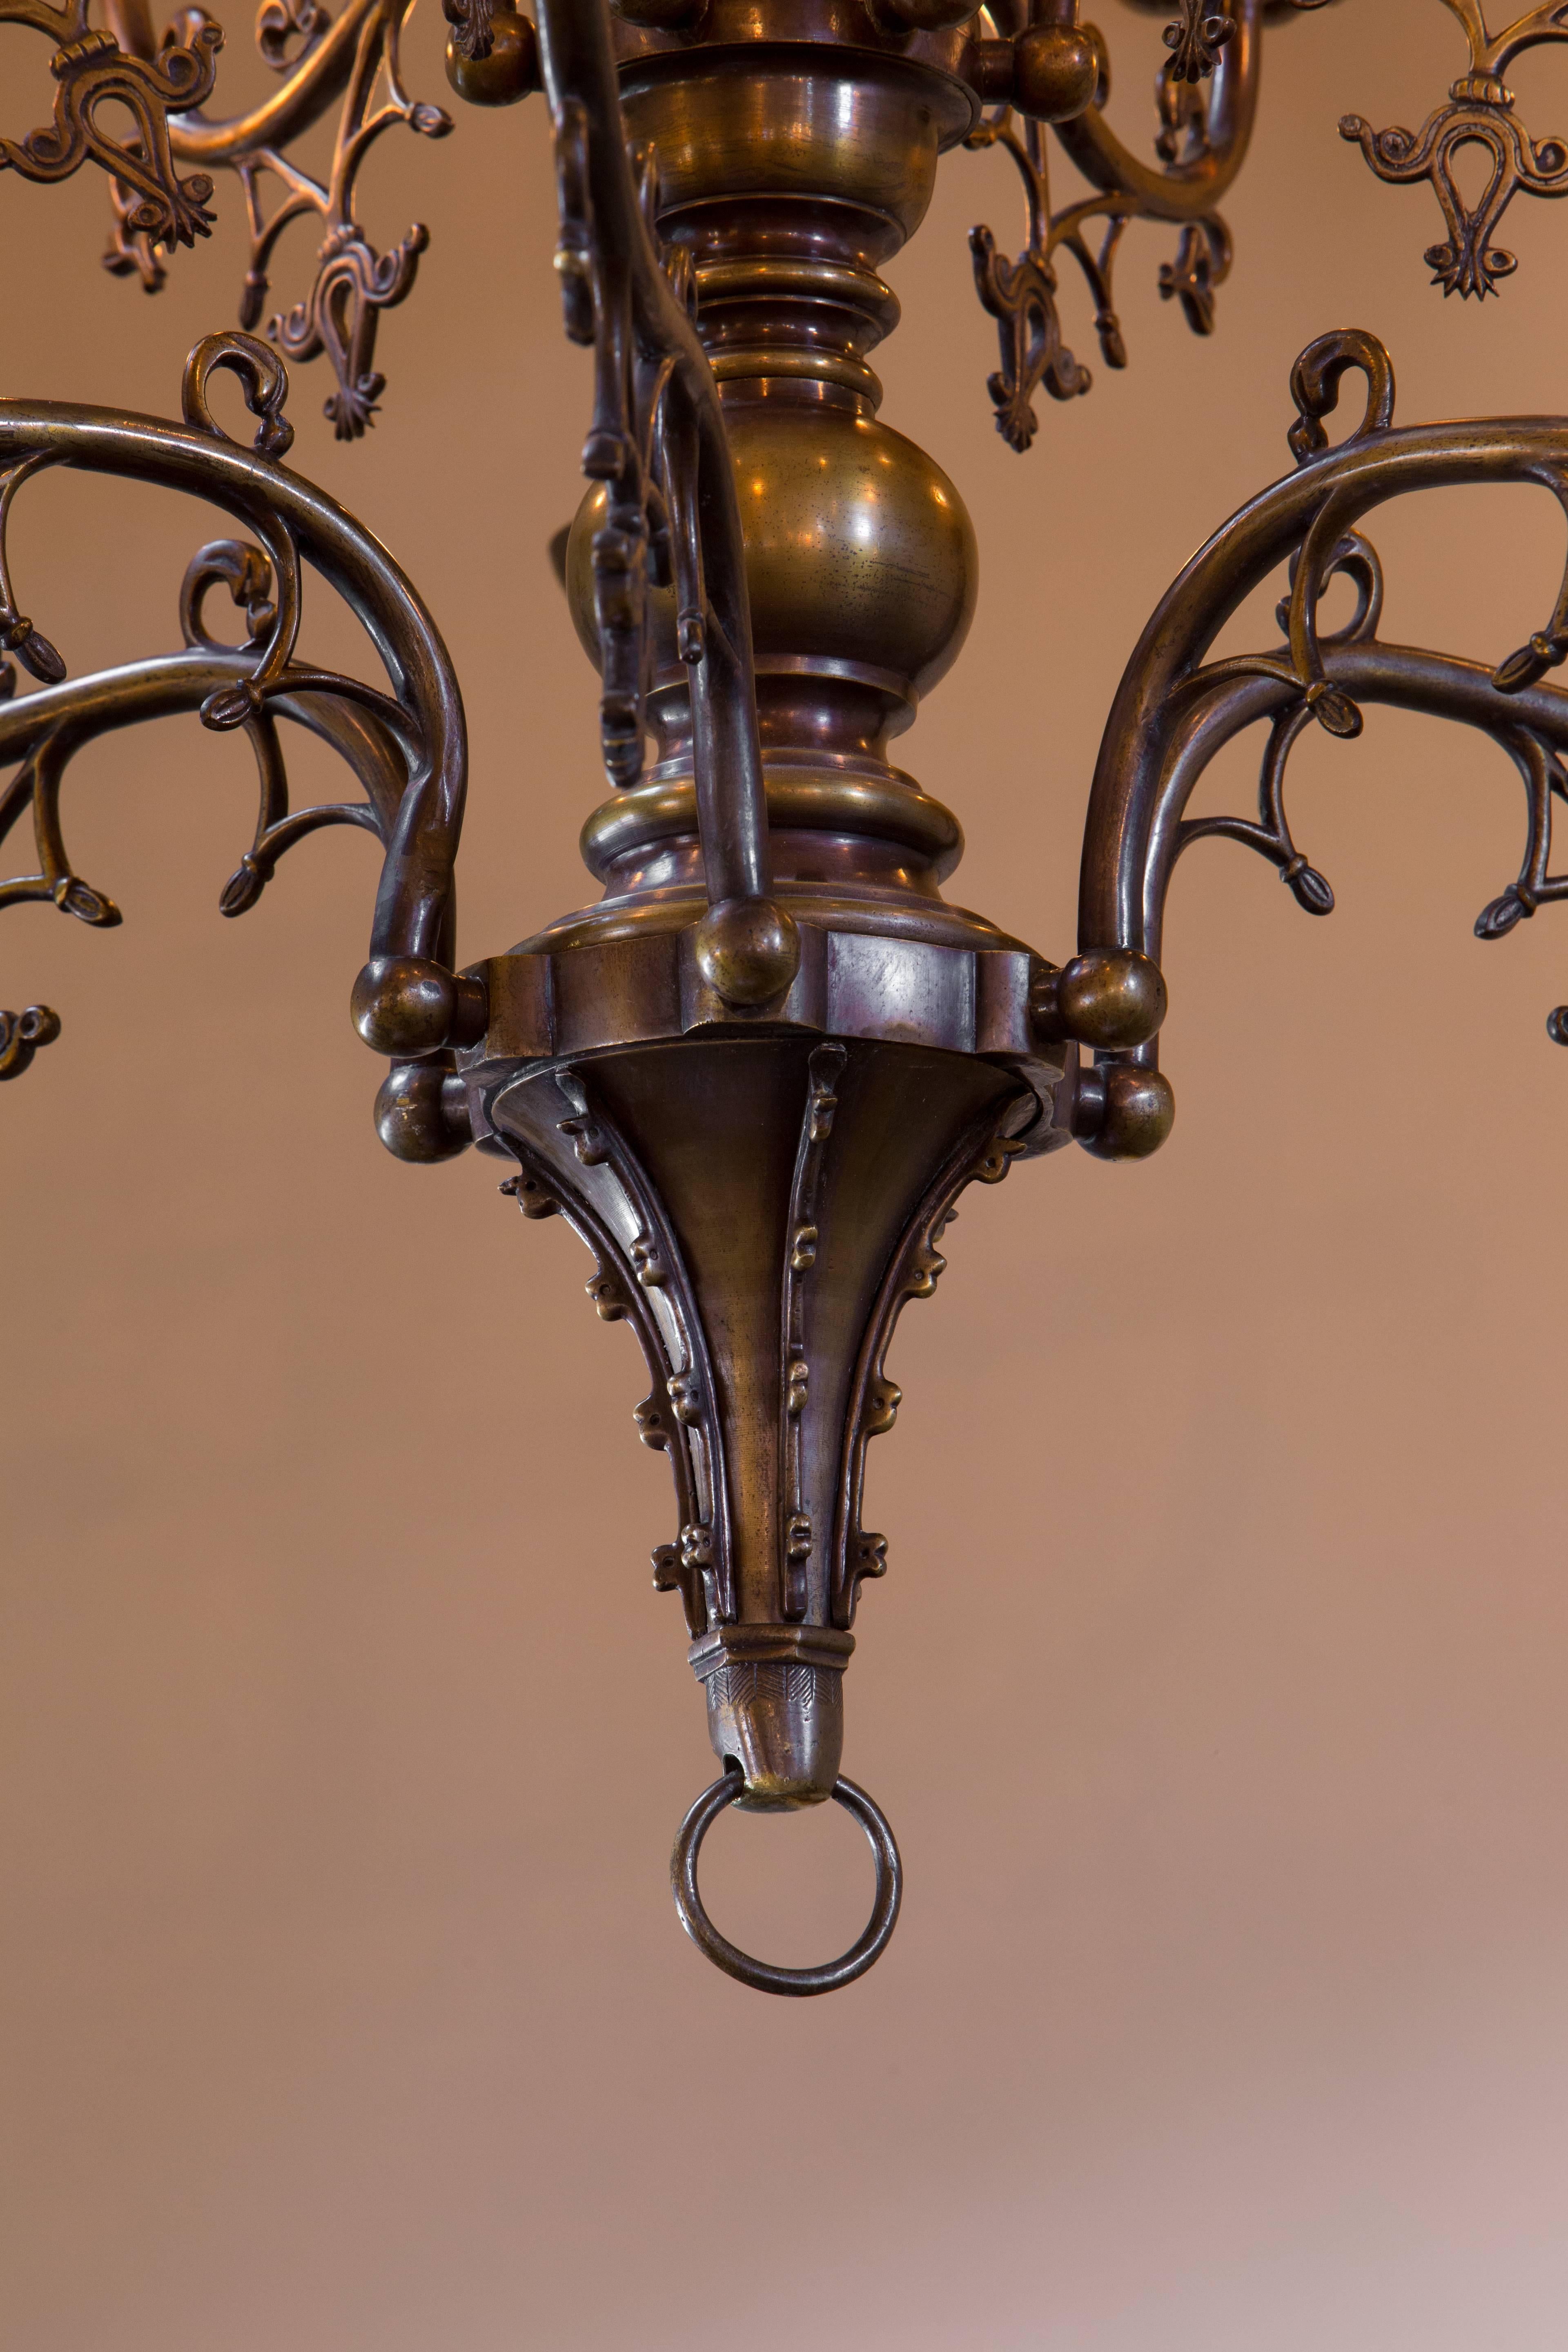 Lustre néo-gothique en bronze ancien de Belgique, vers 1900.
La fonte, la patine et les détails sont magnifiques.
Nouvellement recâblée aux États-Unis avec toutes les pièces listées UL et 12 douilles candélabres. Livré avec une chaîne et un